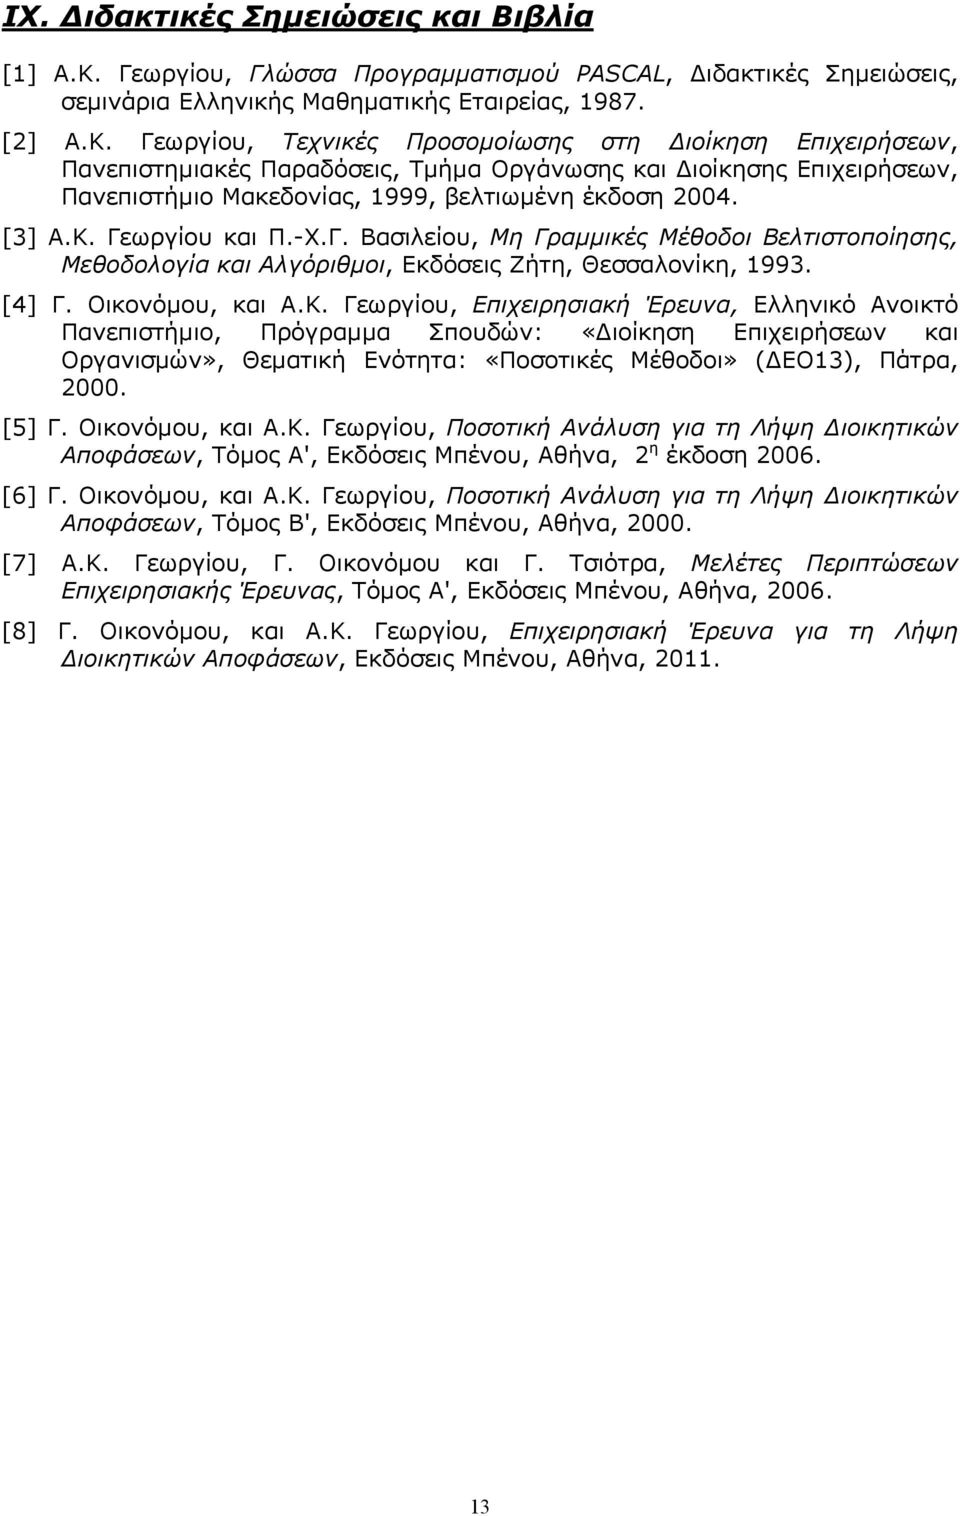 Γεωργίου, Τεχνικές Προσομοίωσης στη ιοίκηση Επιχειρήσεων, Πανεπιστημιακές Παραδόσεις, Τμήμα Οργάνωσης και ιοίκησης Επιχειρήσεων, Πανεπιστήμιο Μακεδονίας, 1999, βελτιωμένη έκδοση 2004. [3] Α.Κ.